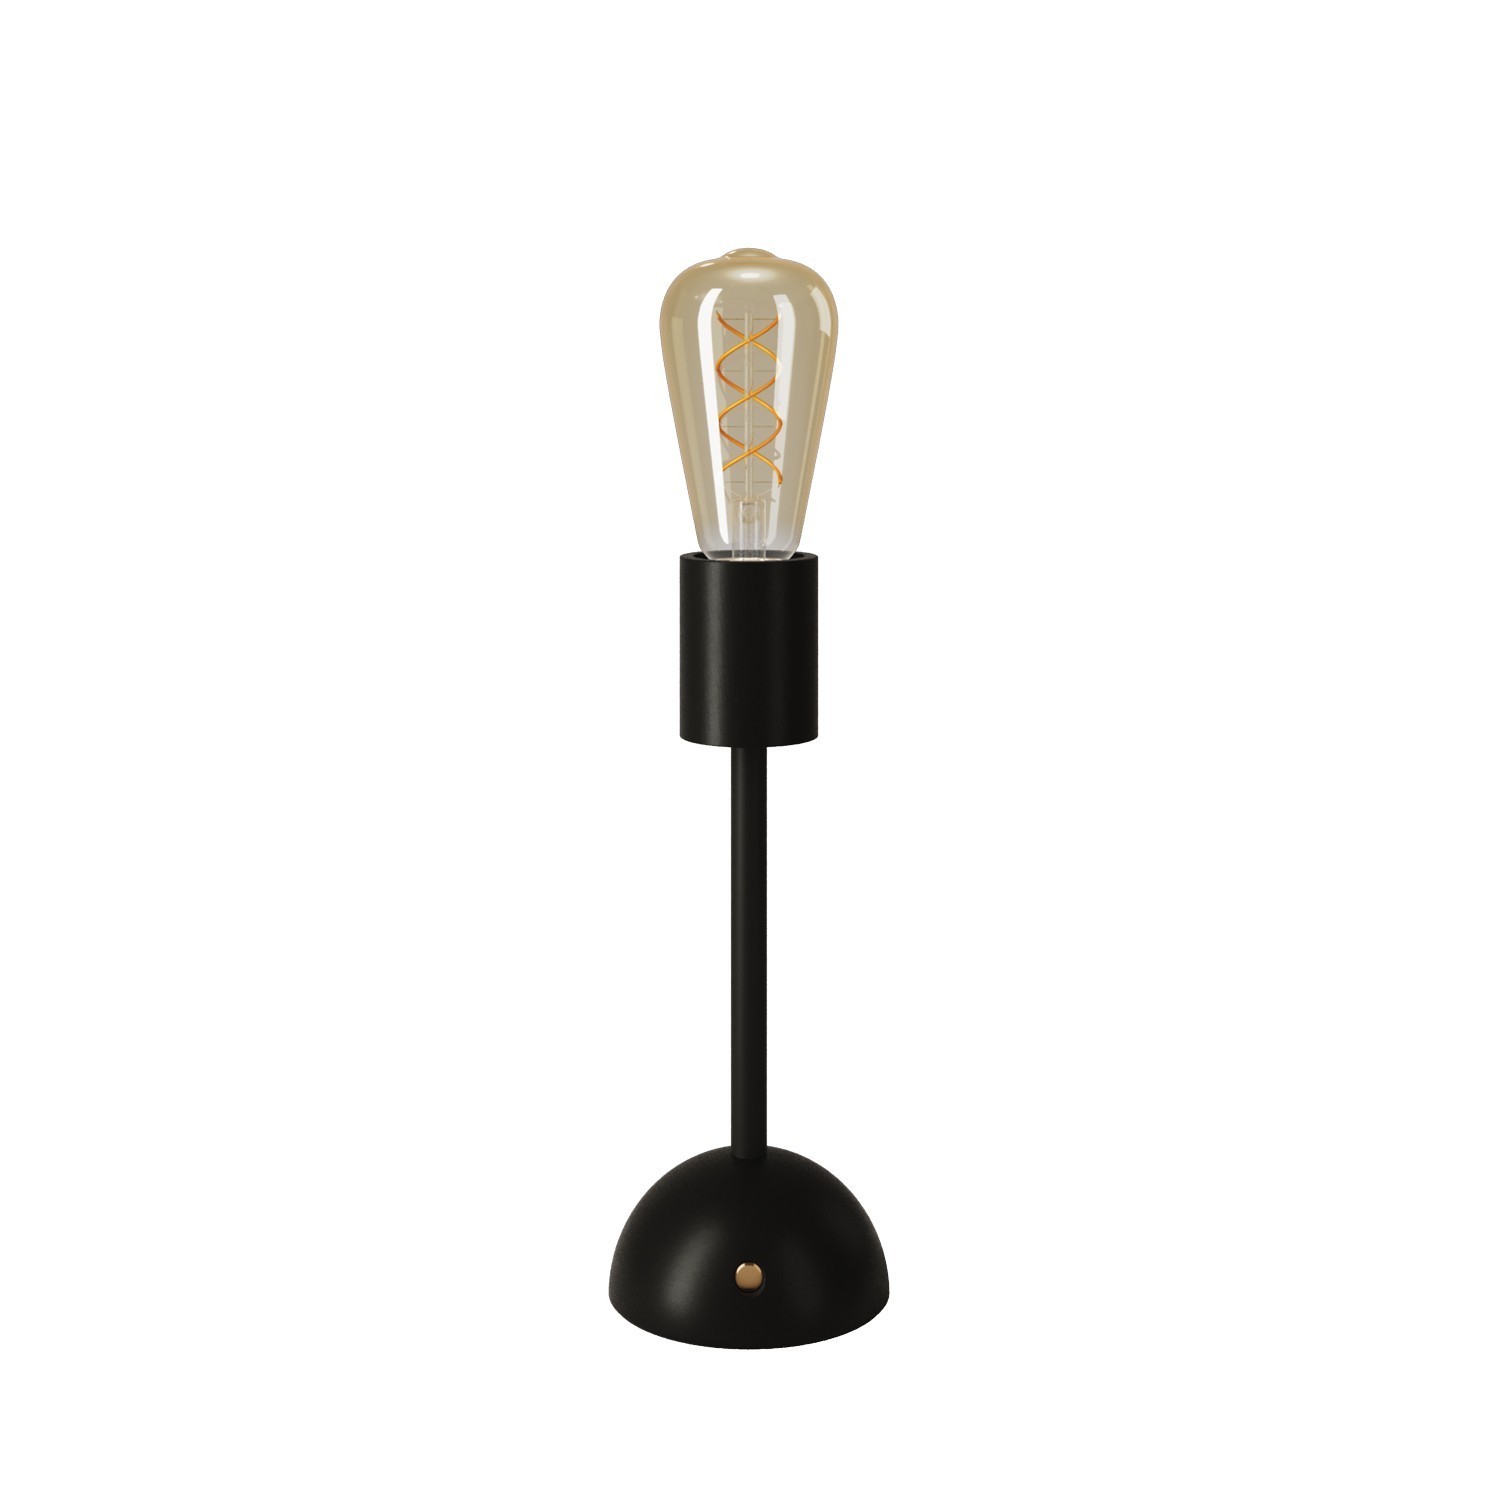 Draagbare en oplaadbare Cables02 Lamp met Edison golden globe gloeilamp